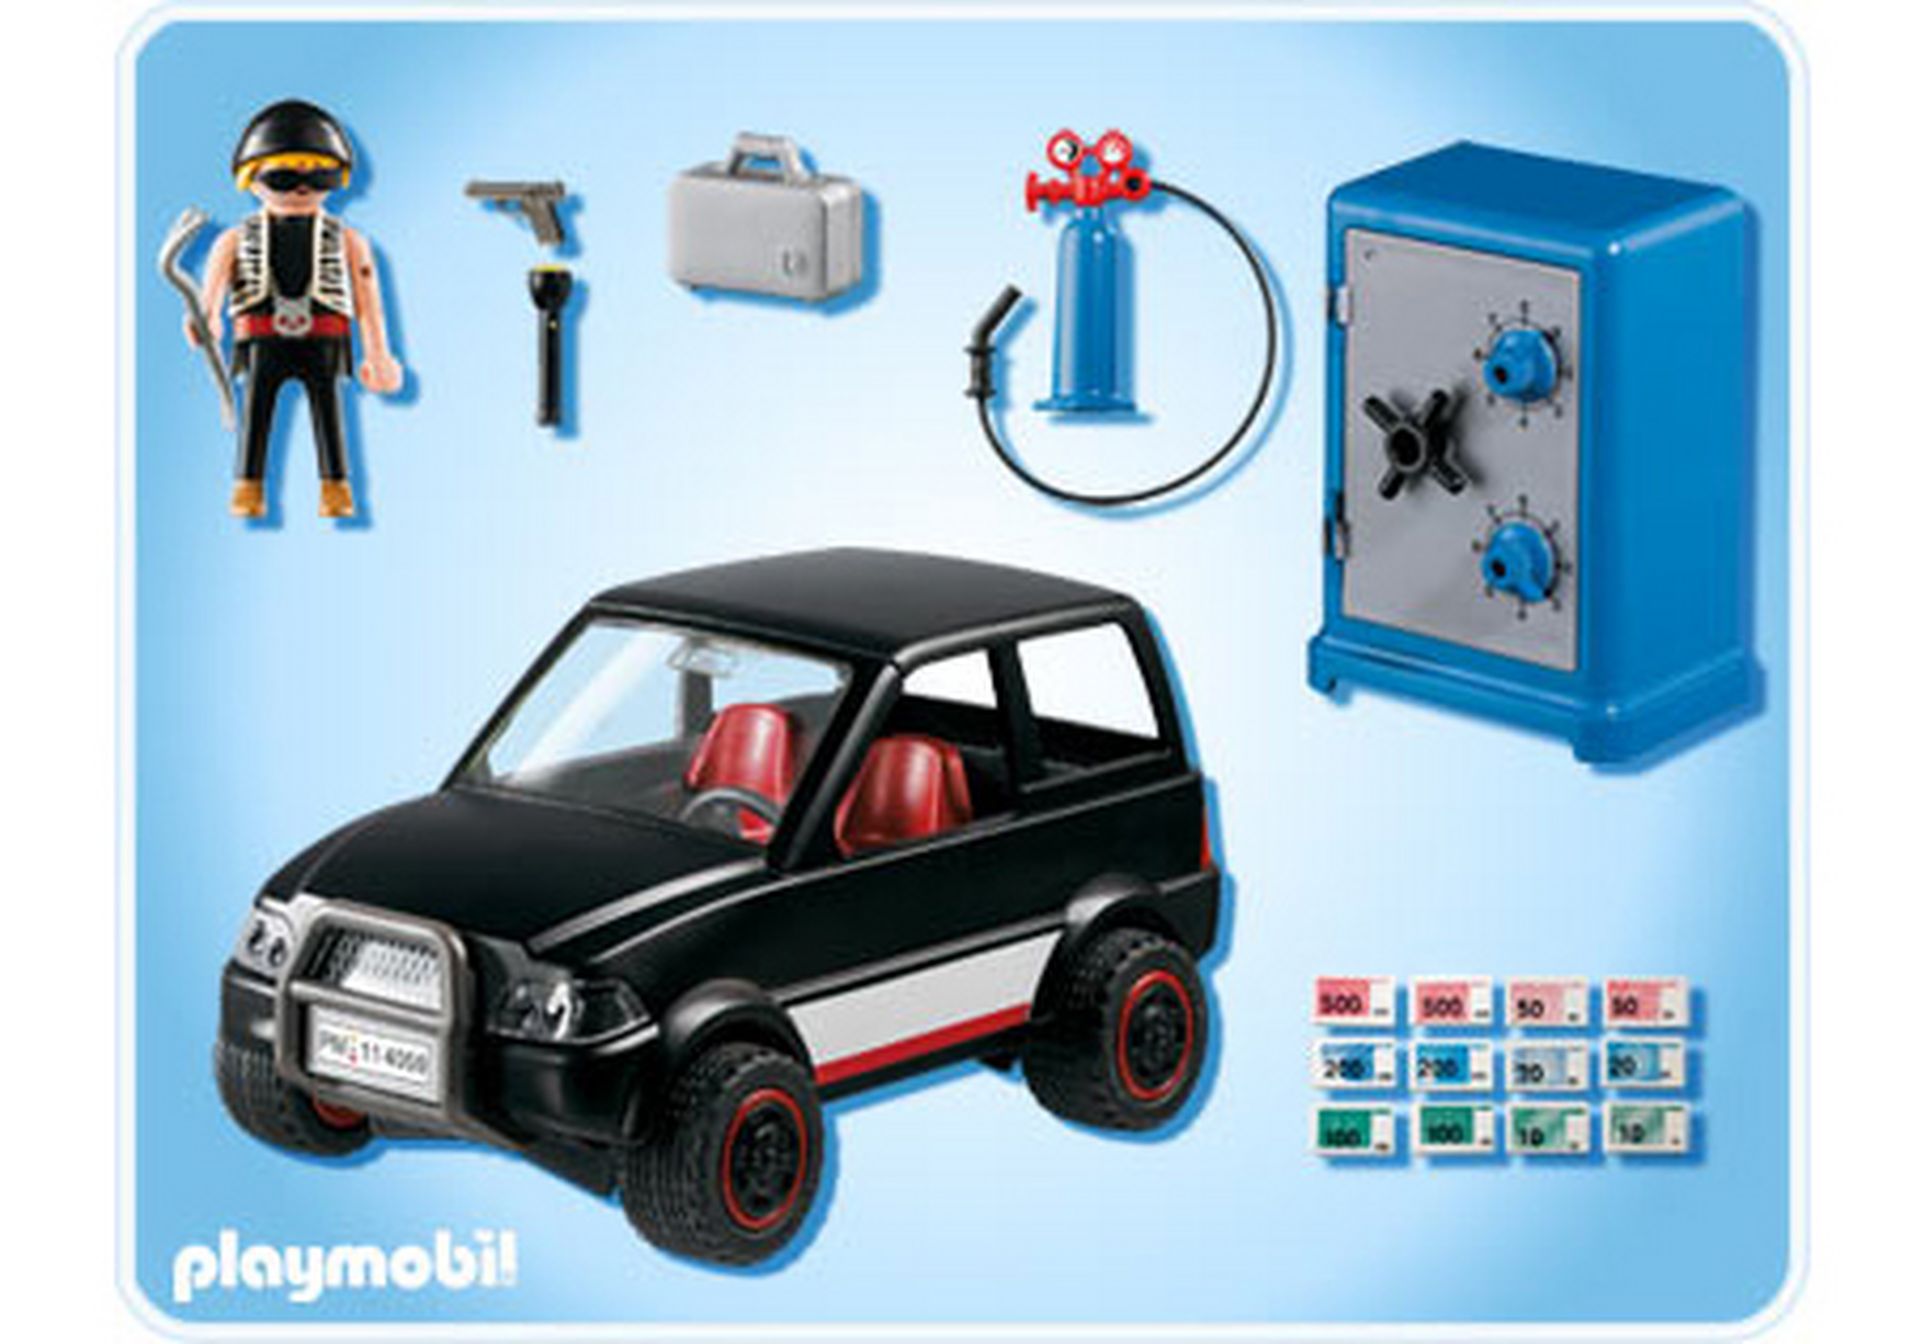 Playmobil NEU OVP 4059 Tresorknacker mit Fluchtfahrzeug 